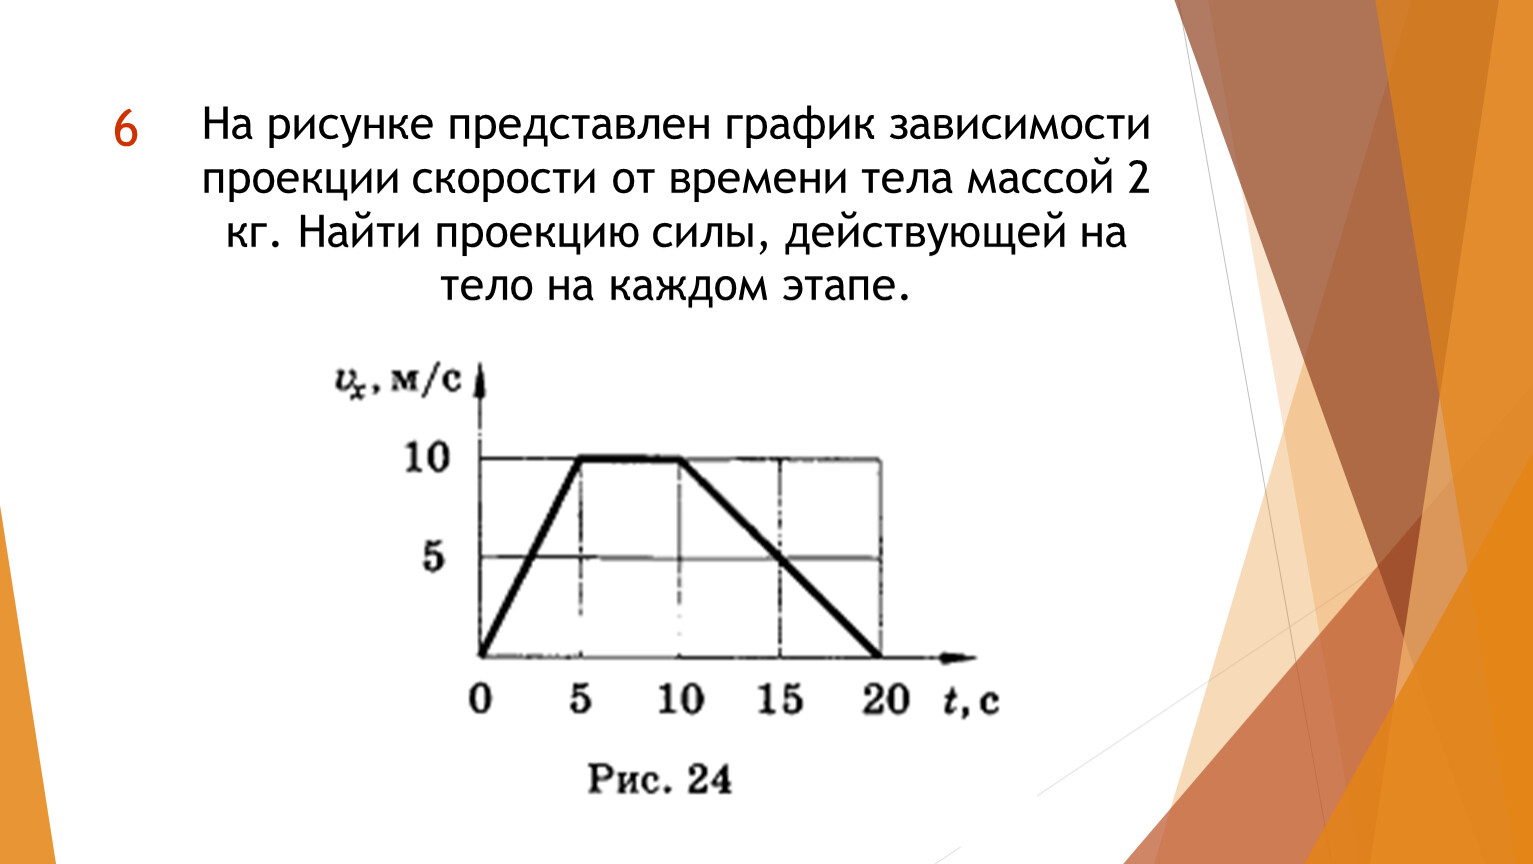 На рисунке представлены графики зависимости проекции равнодействующей. Как строить график зависимости скорости от времени. Uhfabrb pfdbcbvjcnb ghjtrwbb crjhjcnb JN Dhtvtyb. График зависимости скорости тела от времени. График зависимости проекции скорости от времени.